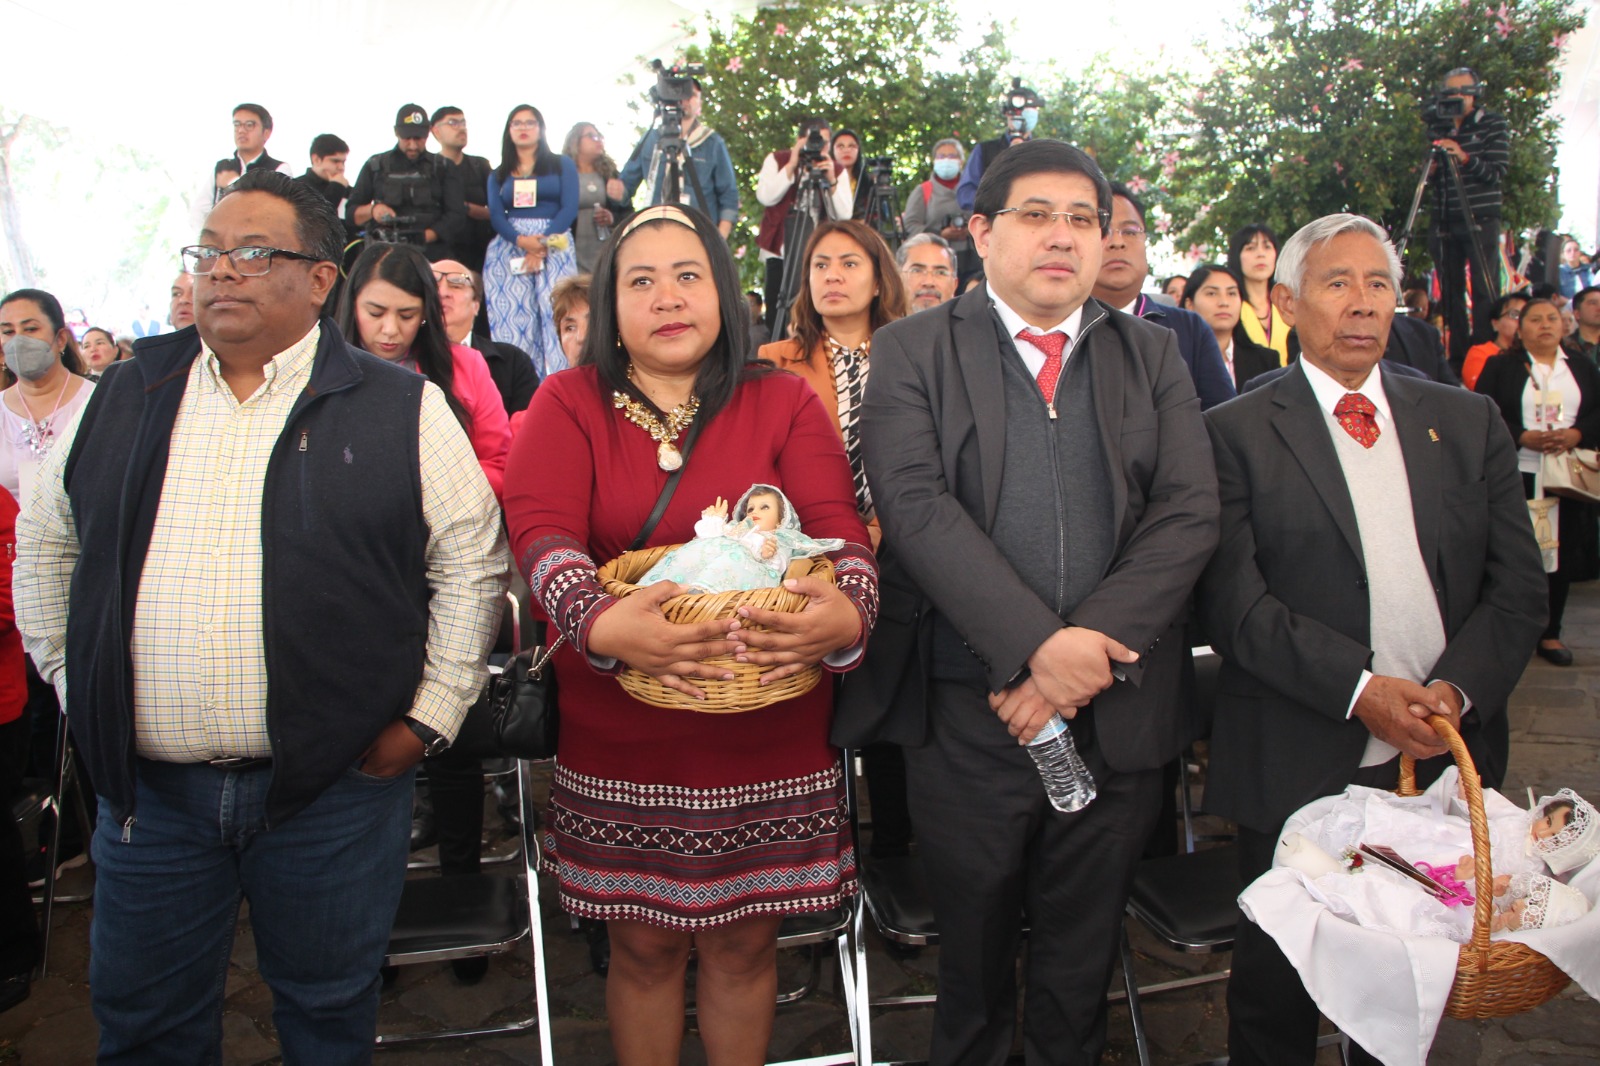 *El “Niñopa” de Xochimilco cambia de mayordomía*